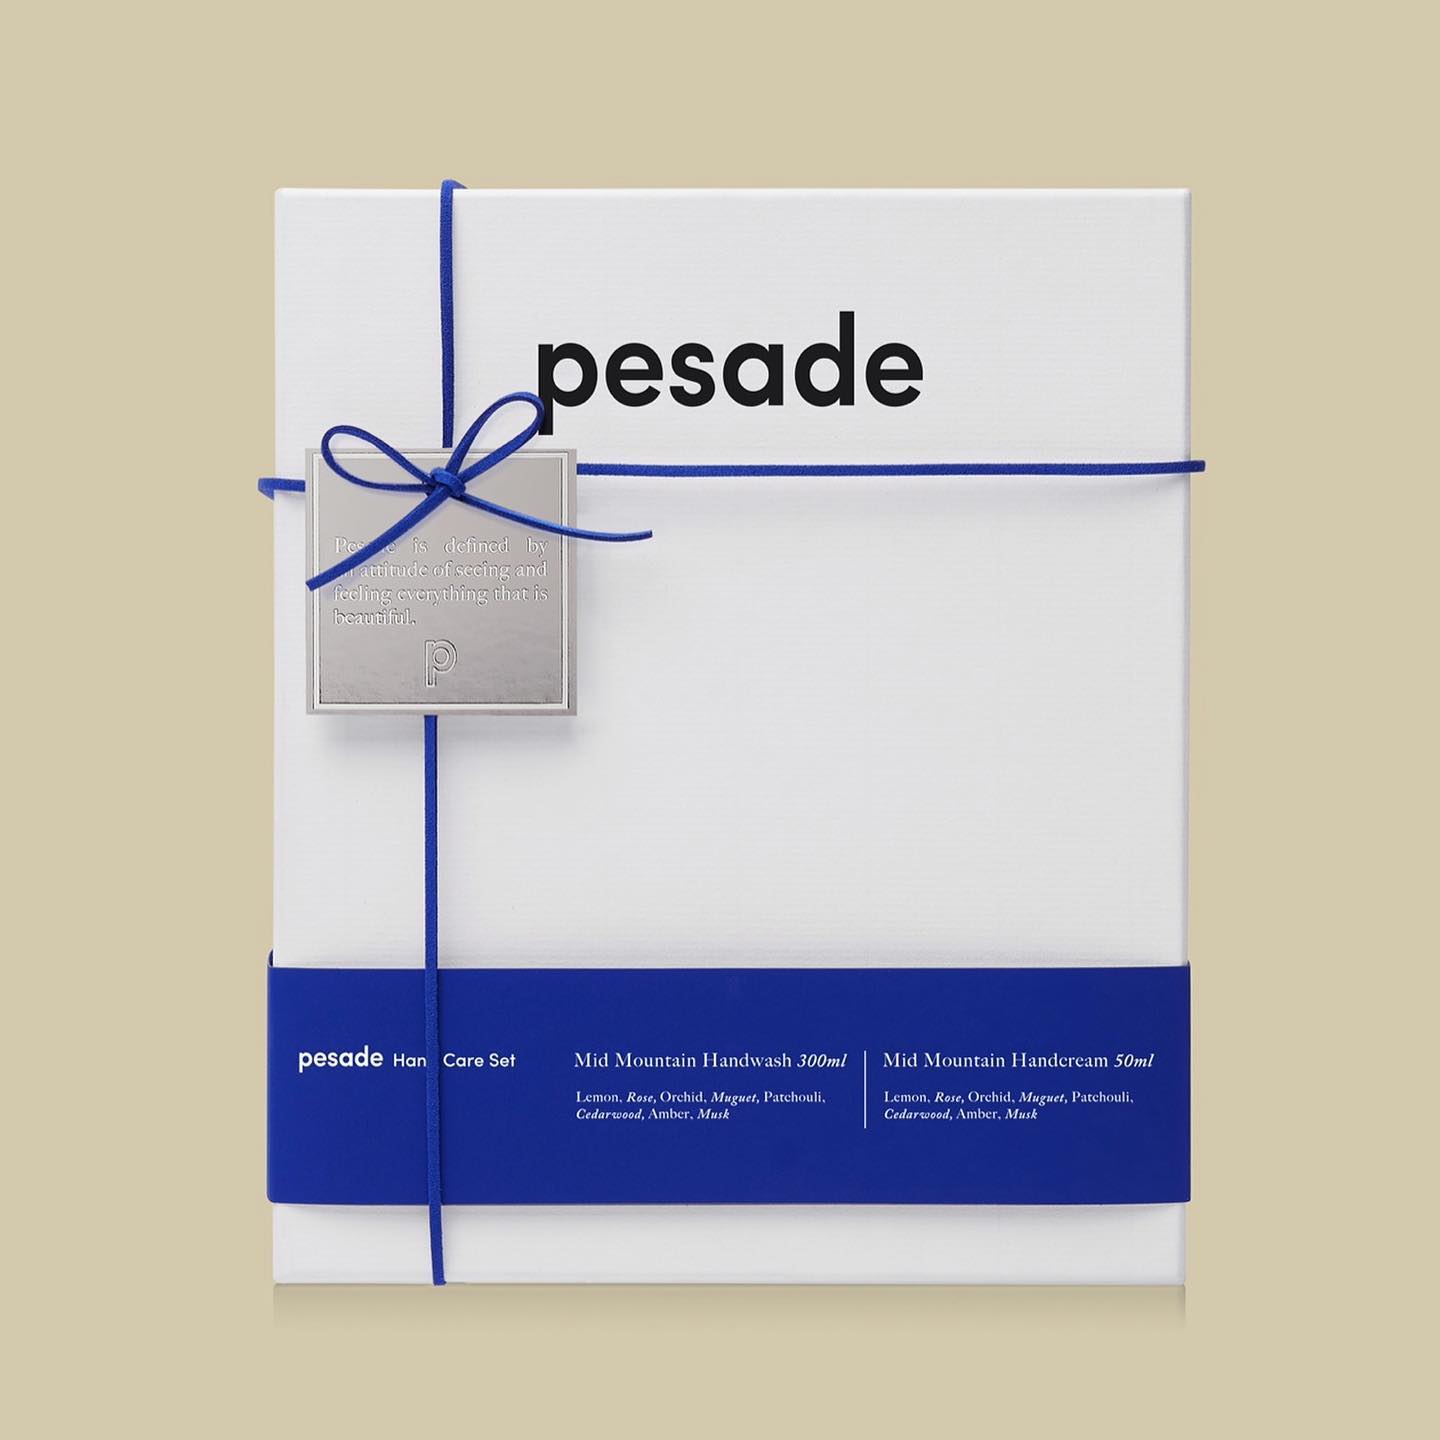 Pesade | Hand care set